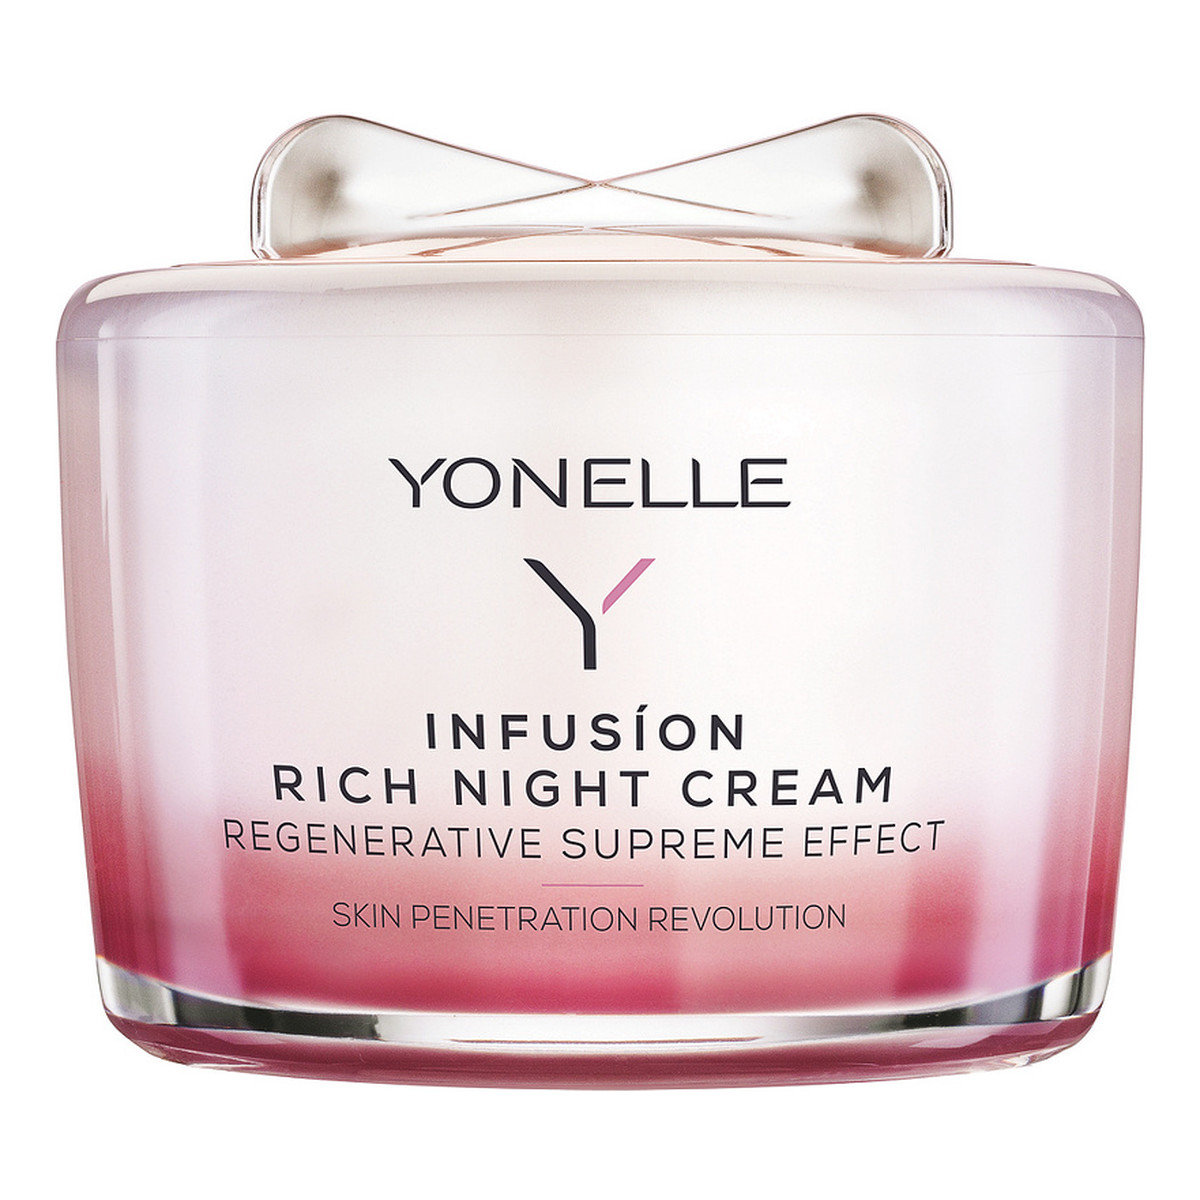 Yonelle Infusion Rich Night Cream Infuzyjny krem odżywczy na noc do skóry dojrzałej 55ml